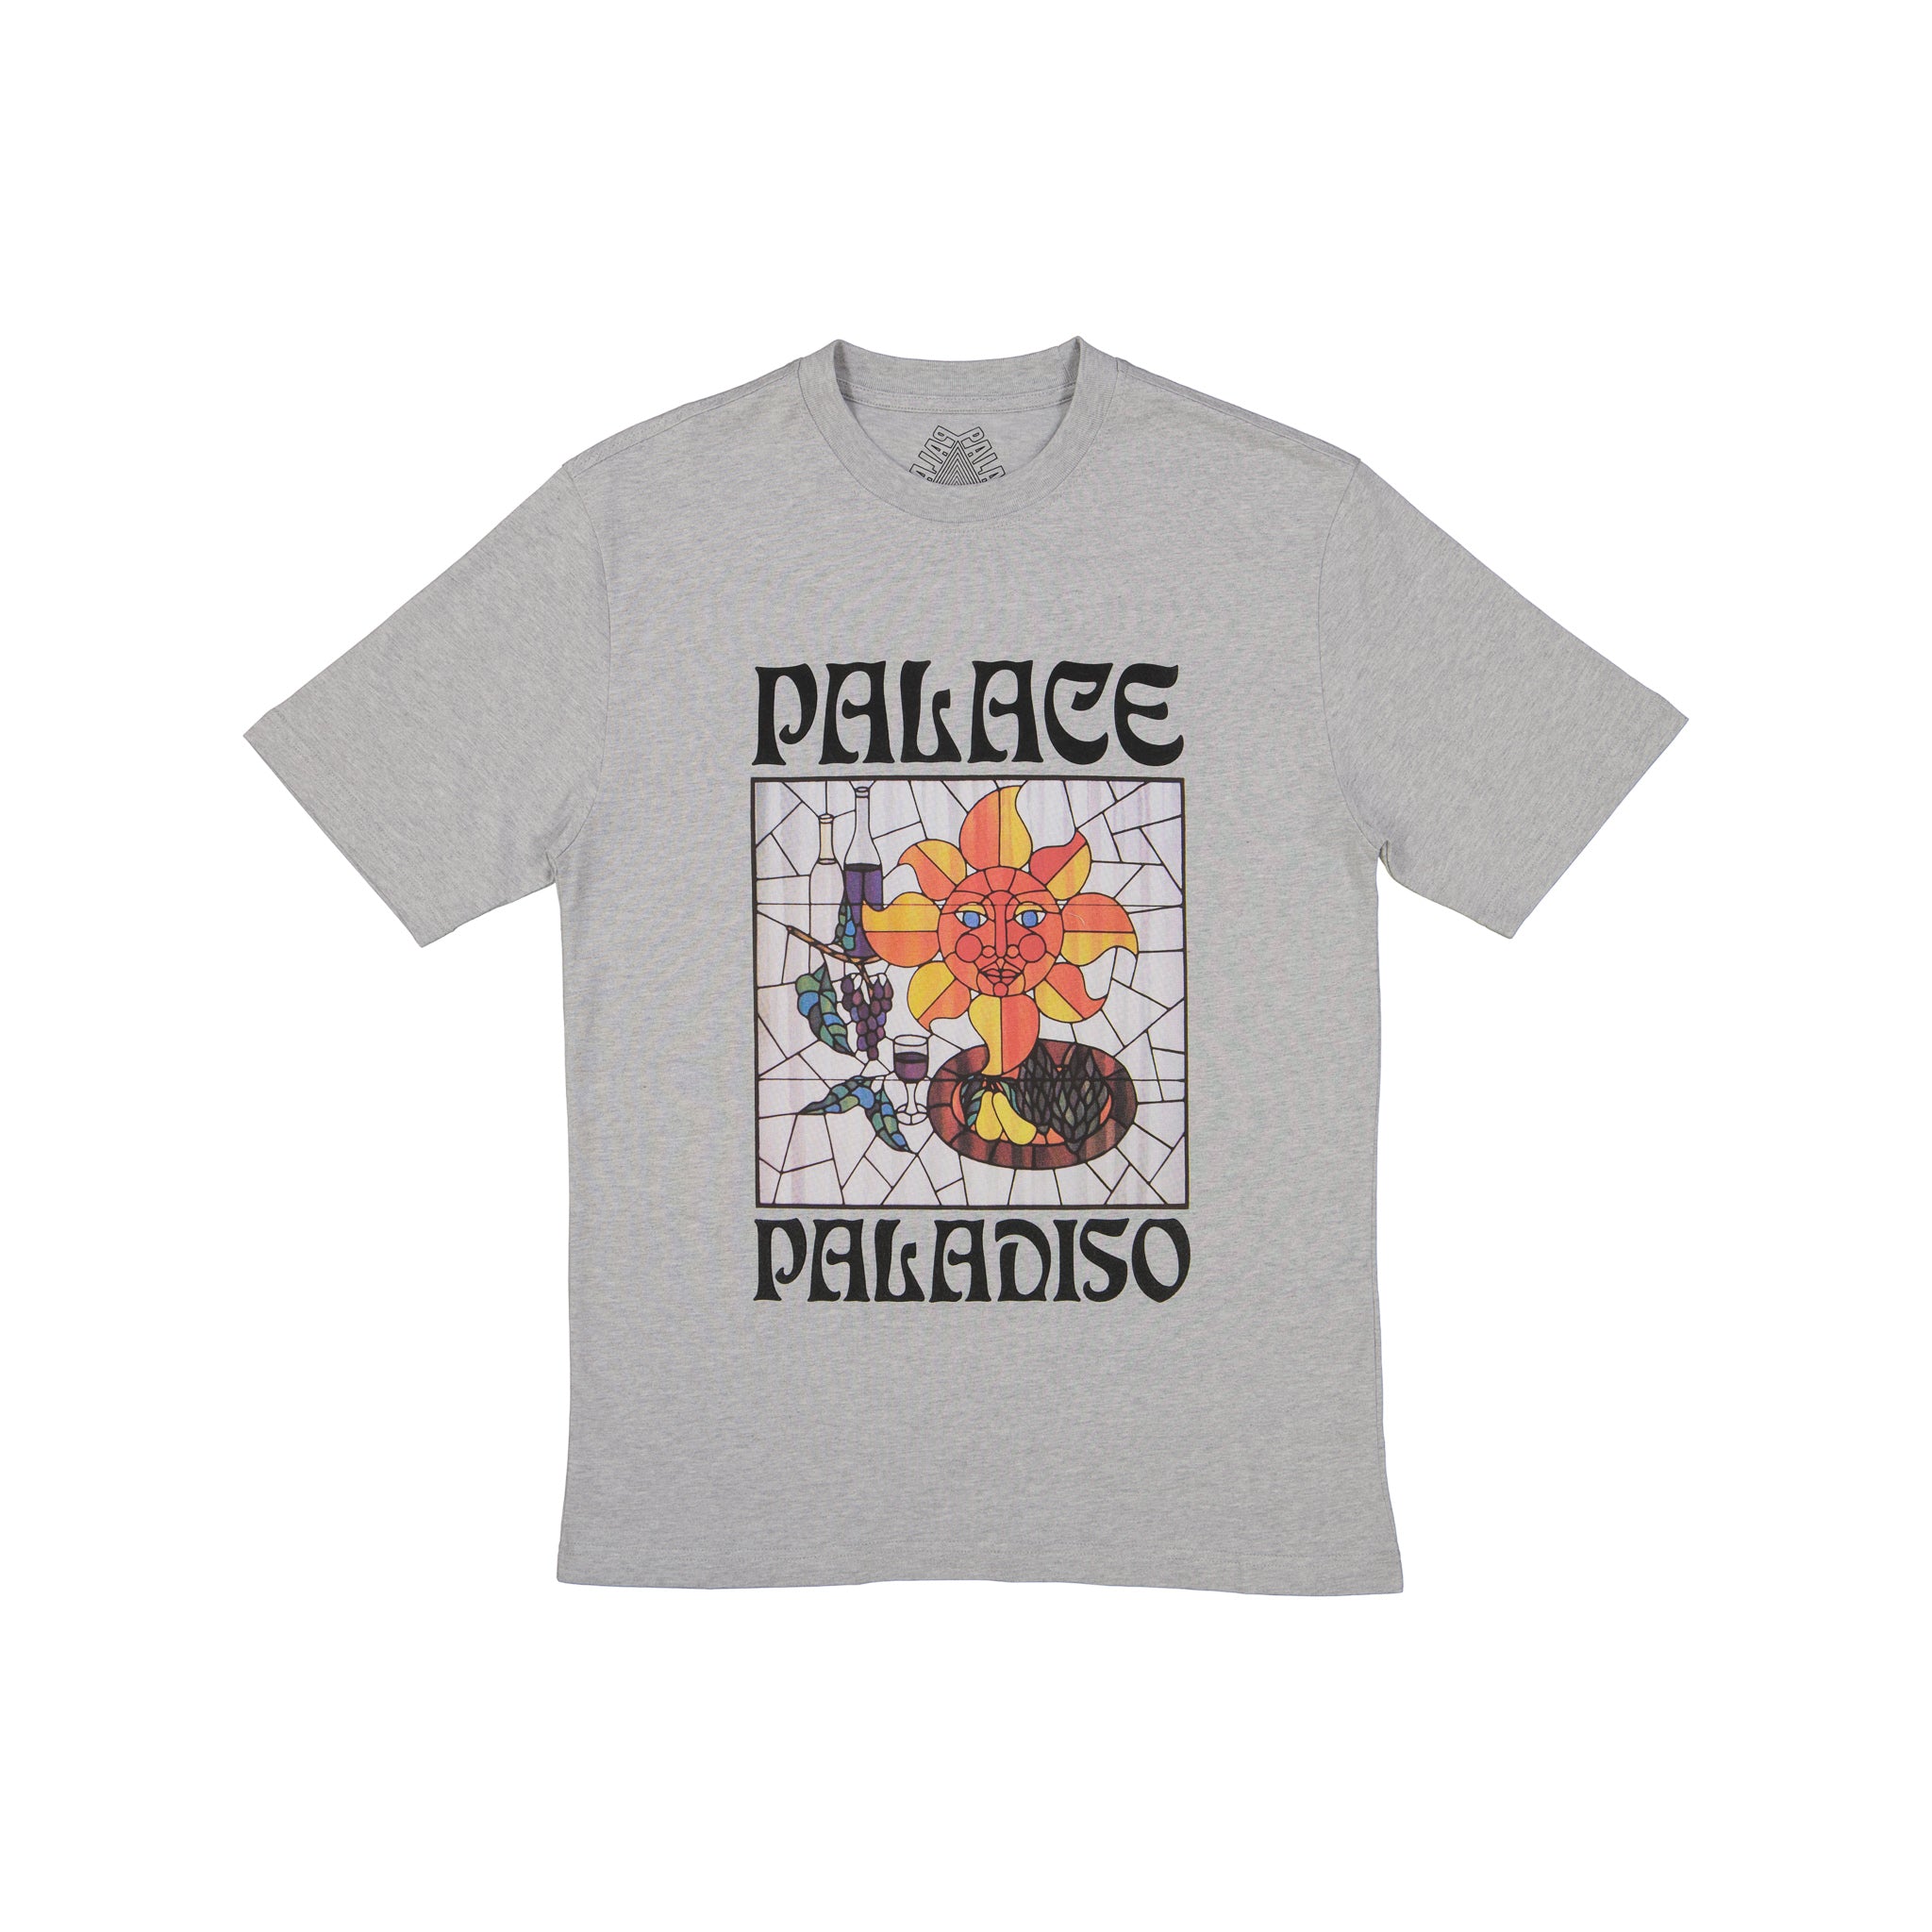 Palace Paladiso T-Shirt Grey Marl - SPRMRKT